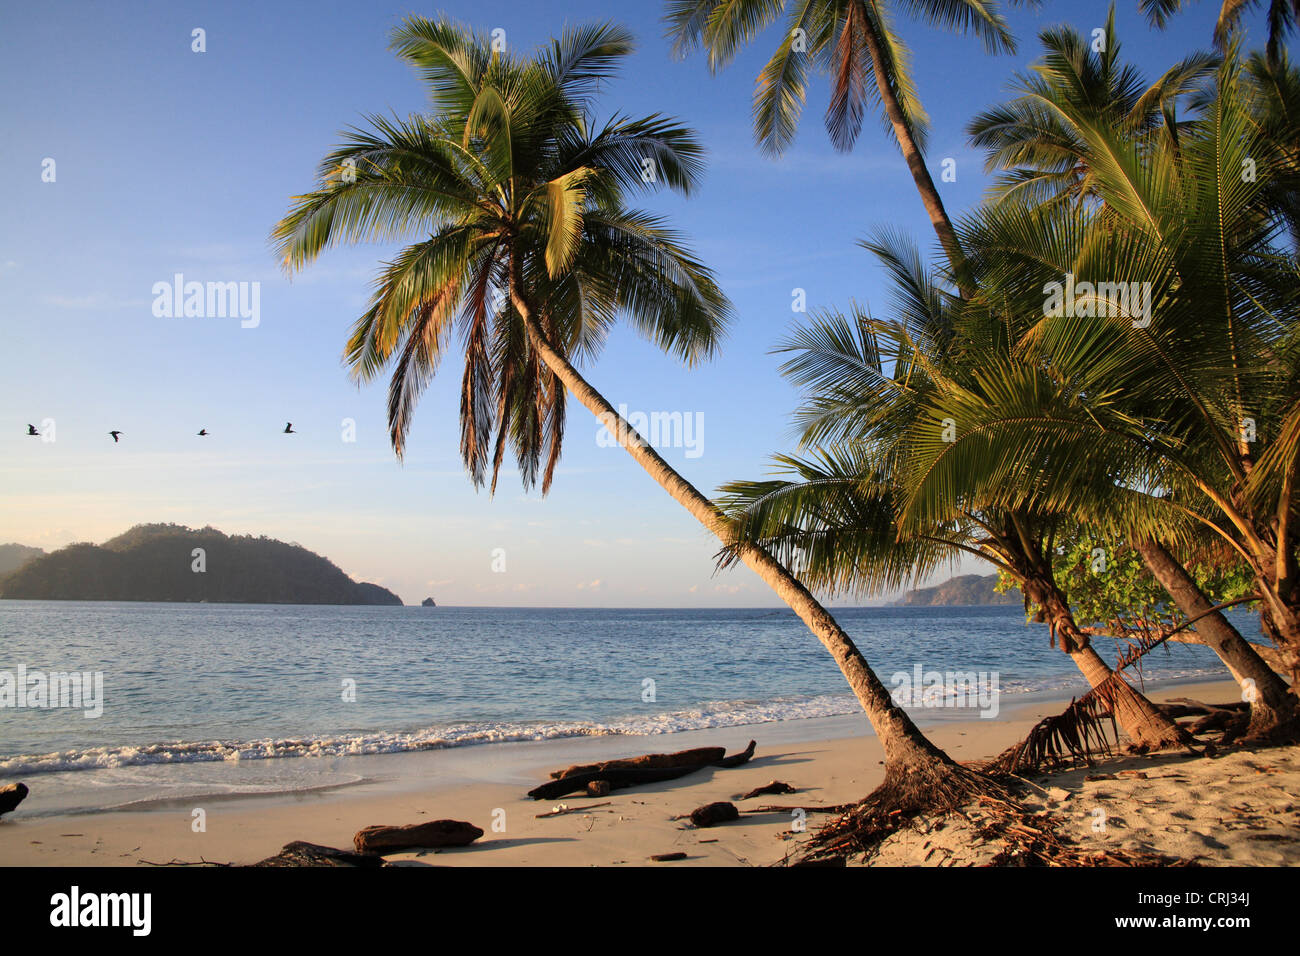 Survol des pélicans Quesera, plage sauvage de Curu, Péninsule de Nicoya, côte pacifique du Costa Rica. Janvier 2011 Banque D'Images